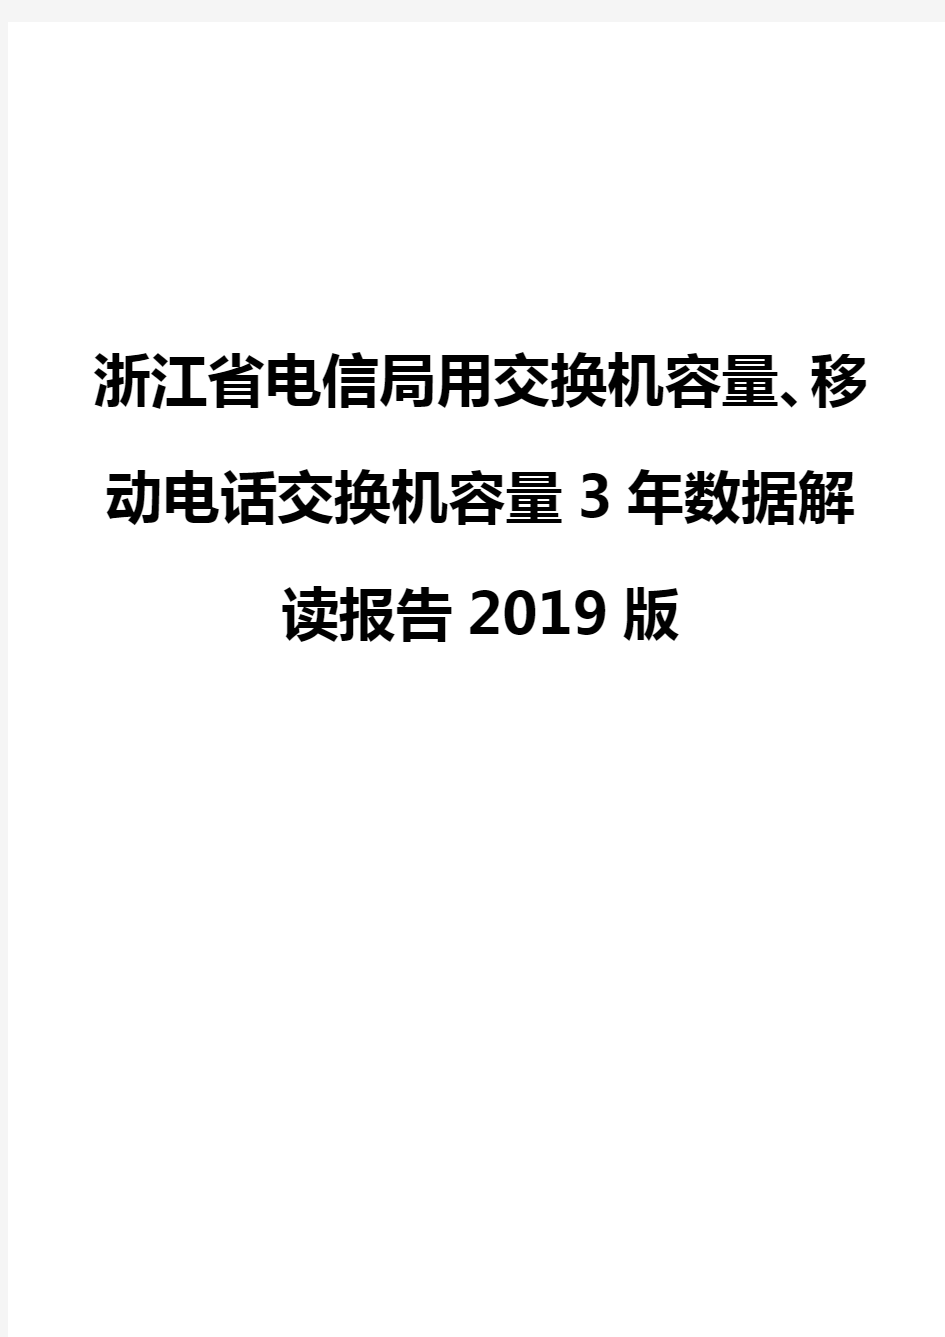 浙江省电信局用交换机容量、移动电话交换机容量3年数据解读报告2019版